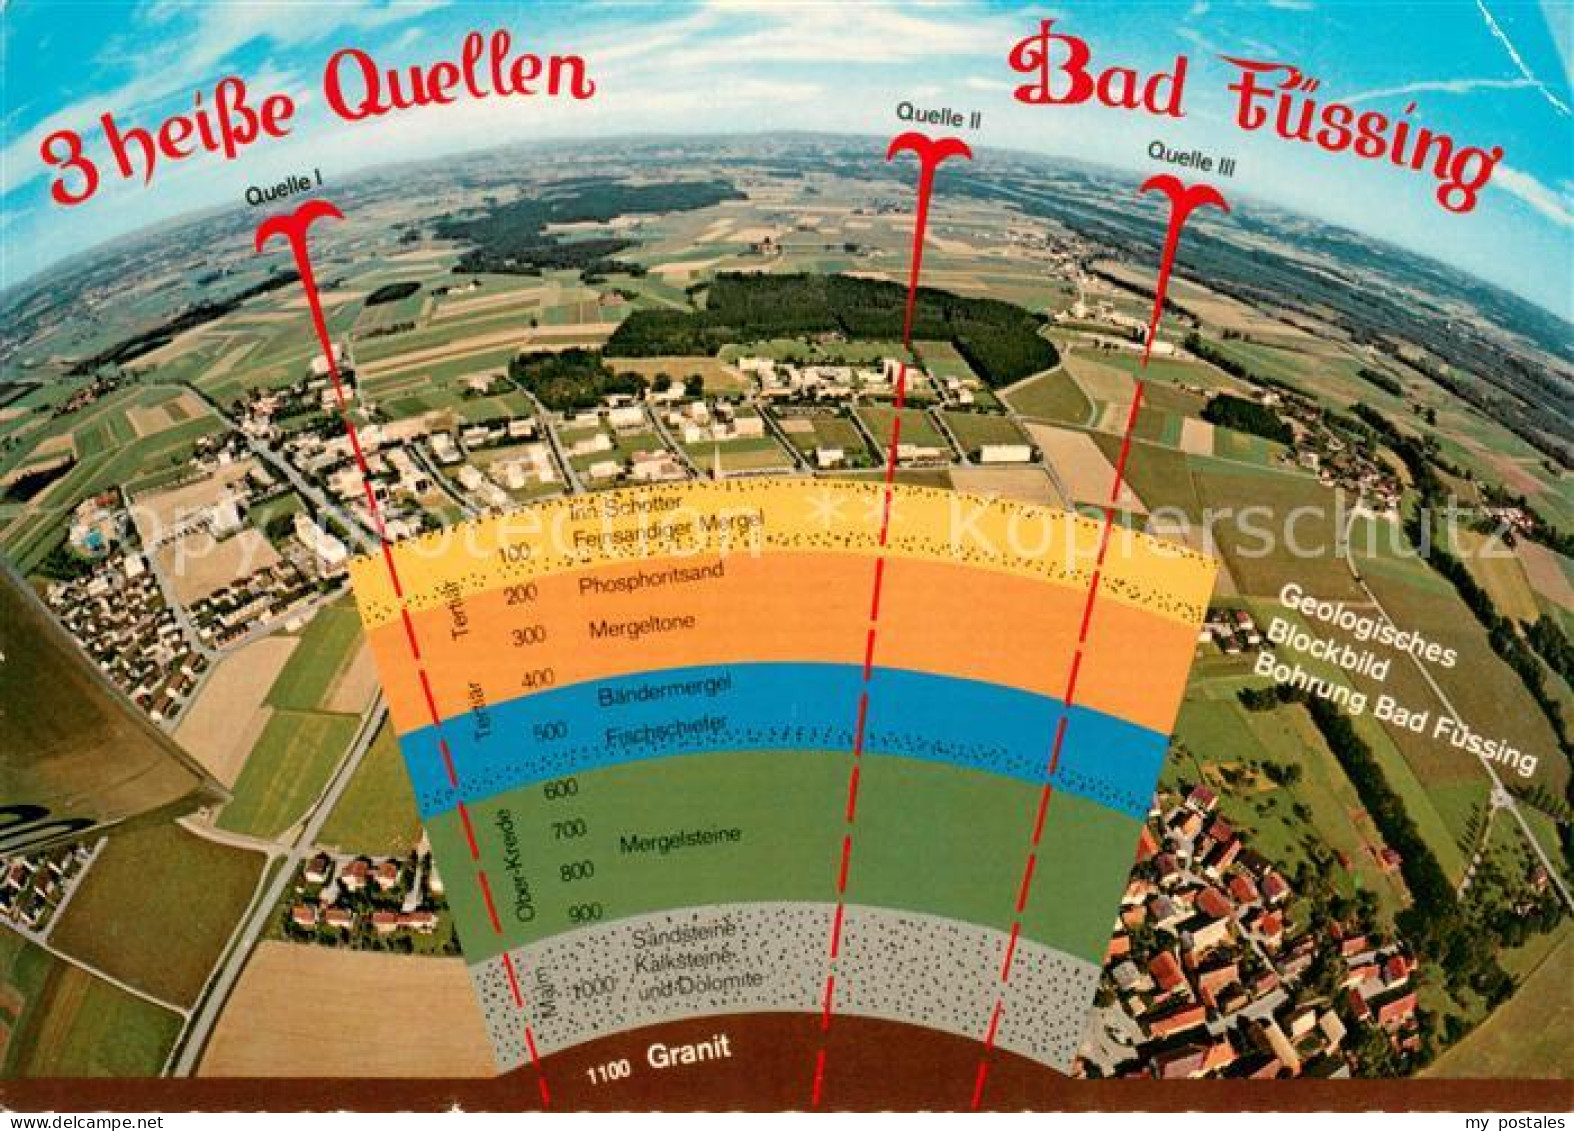 73648305 Bad Fuessing Geolog Blockbild Von 3 Bohrungen 3 Heisse Quellen Fliegera - Bad Füssing